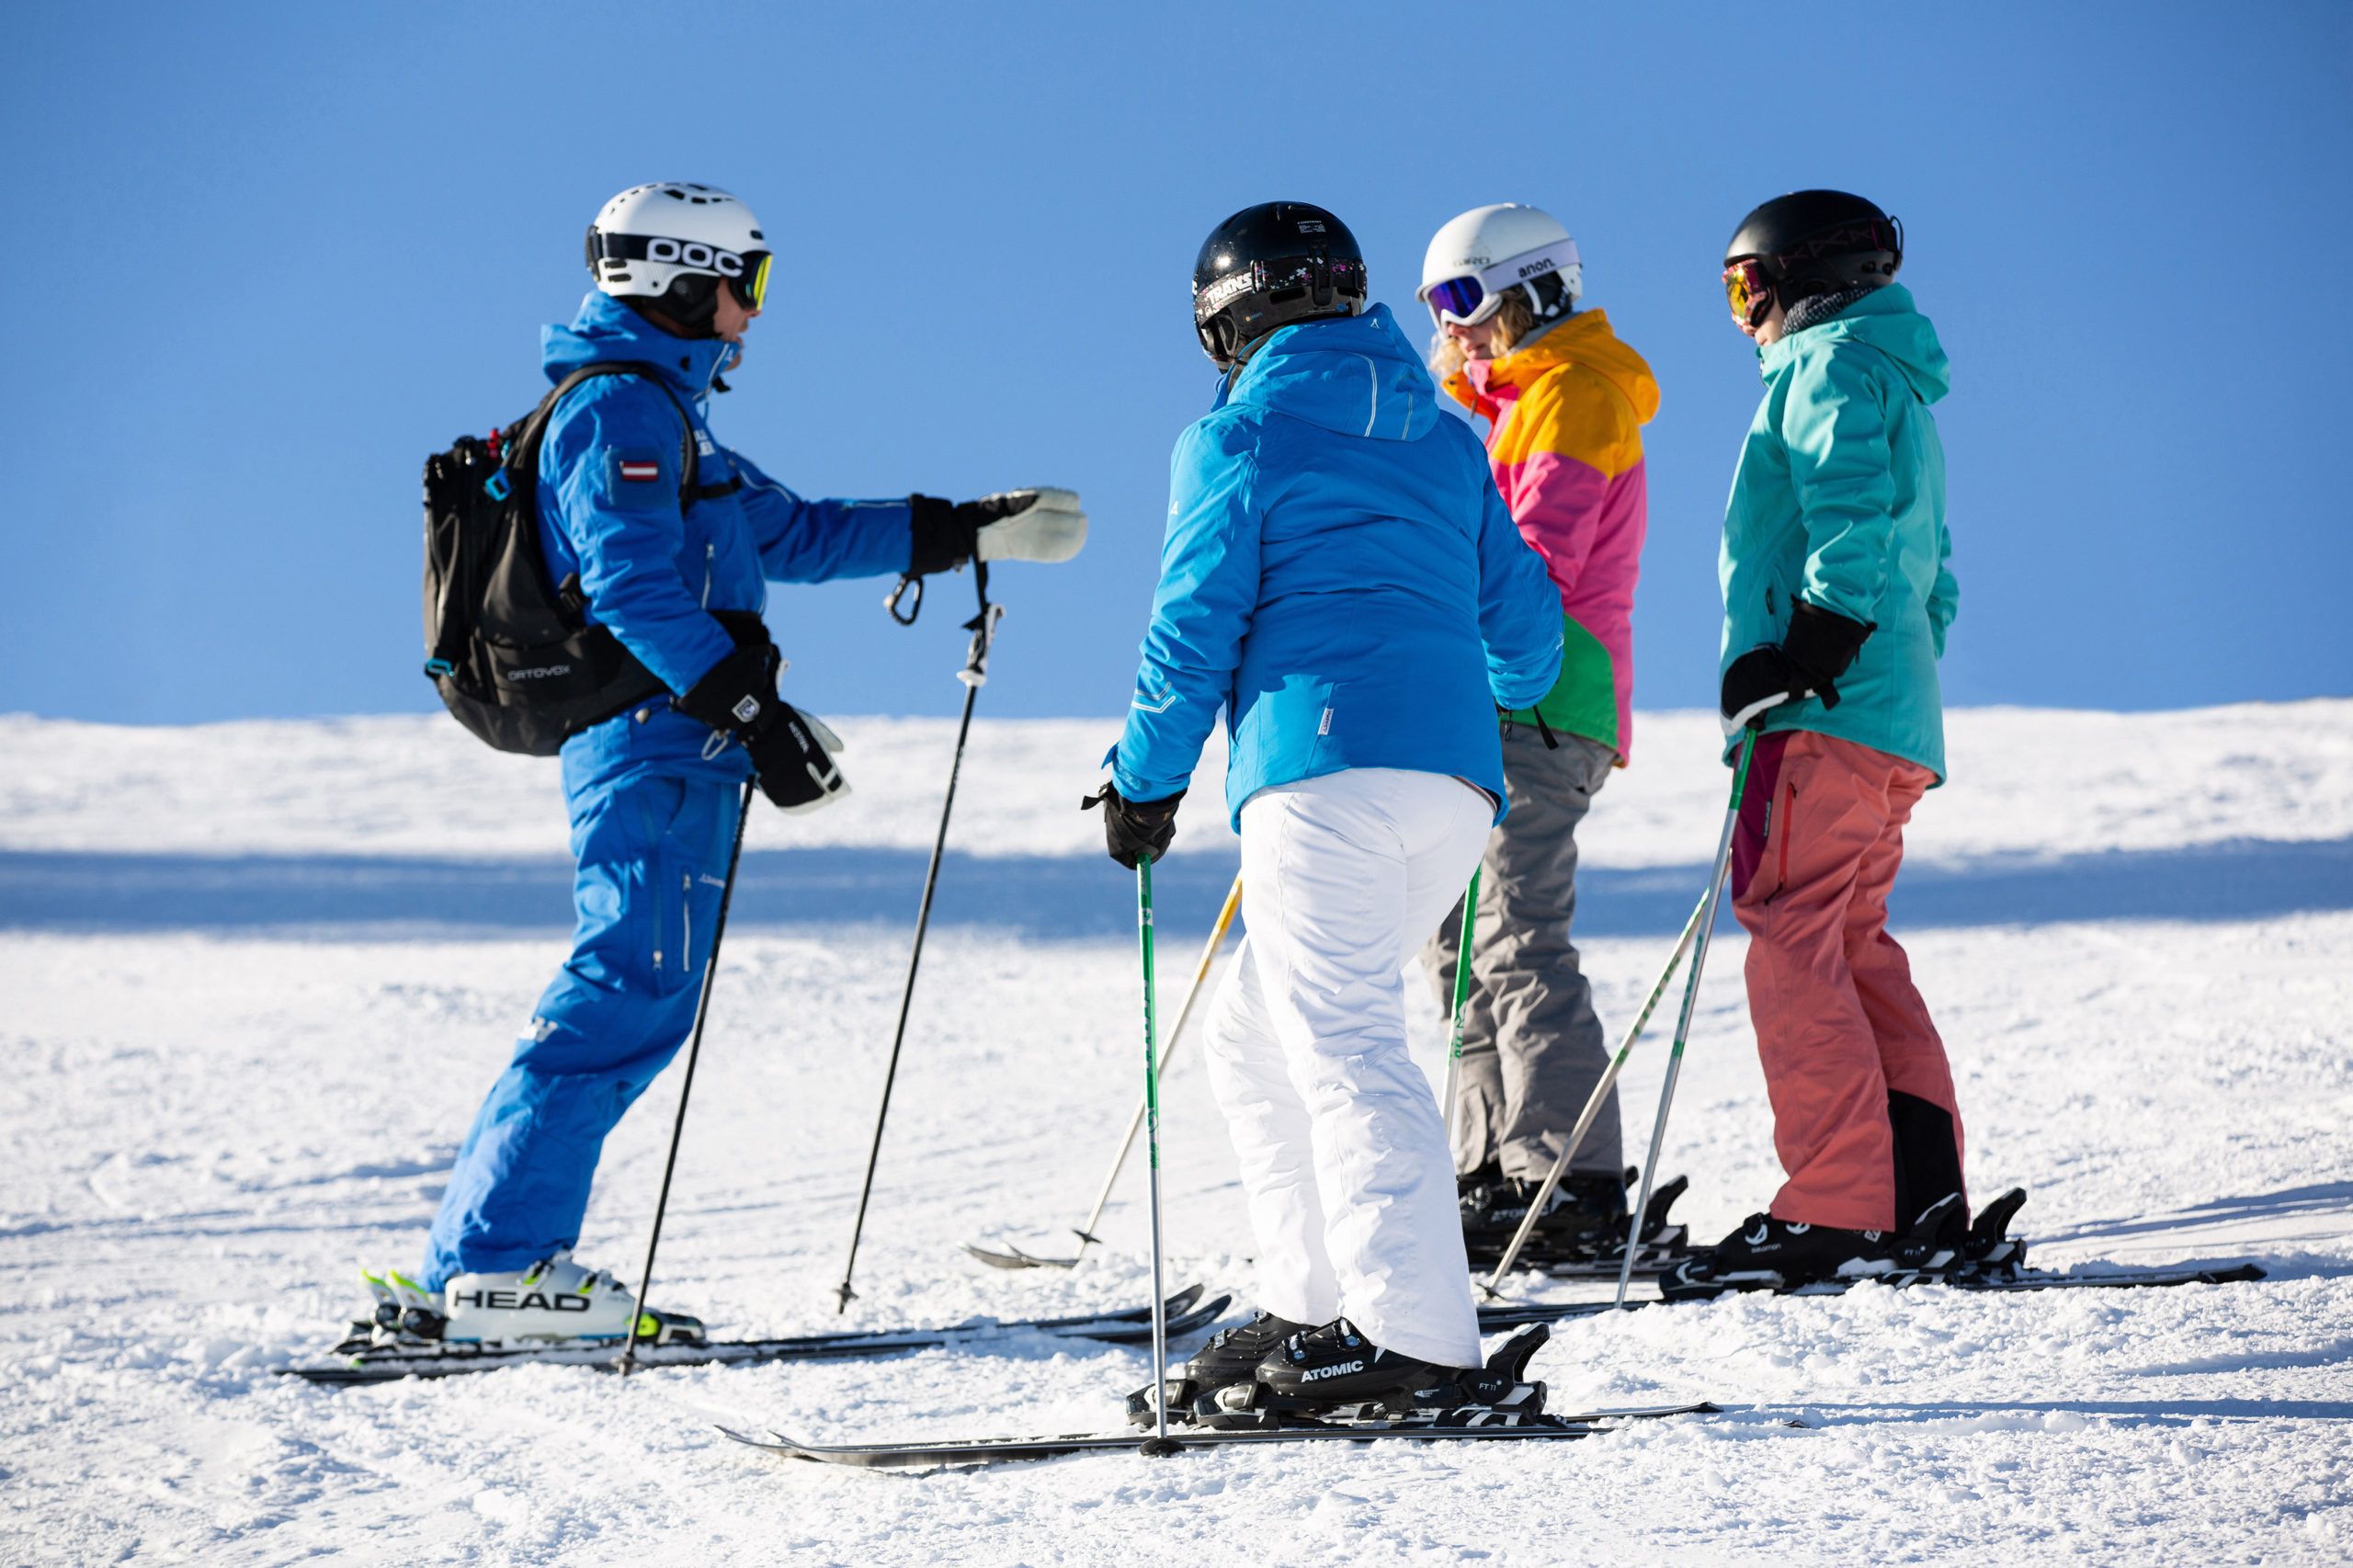 Group Lessons Ski School Mayrhofen Habeler